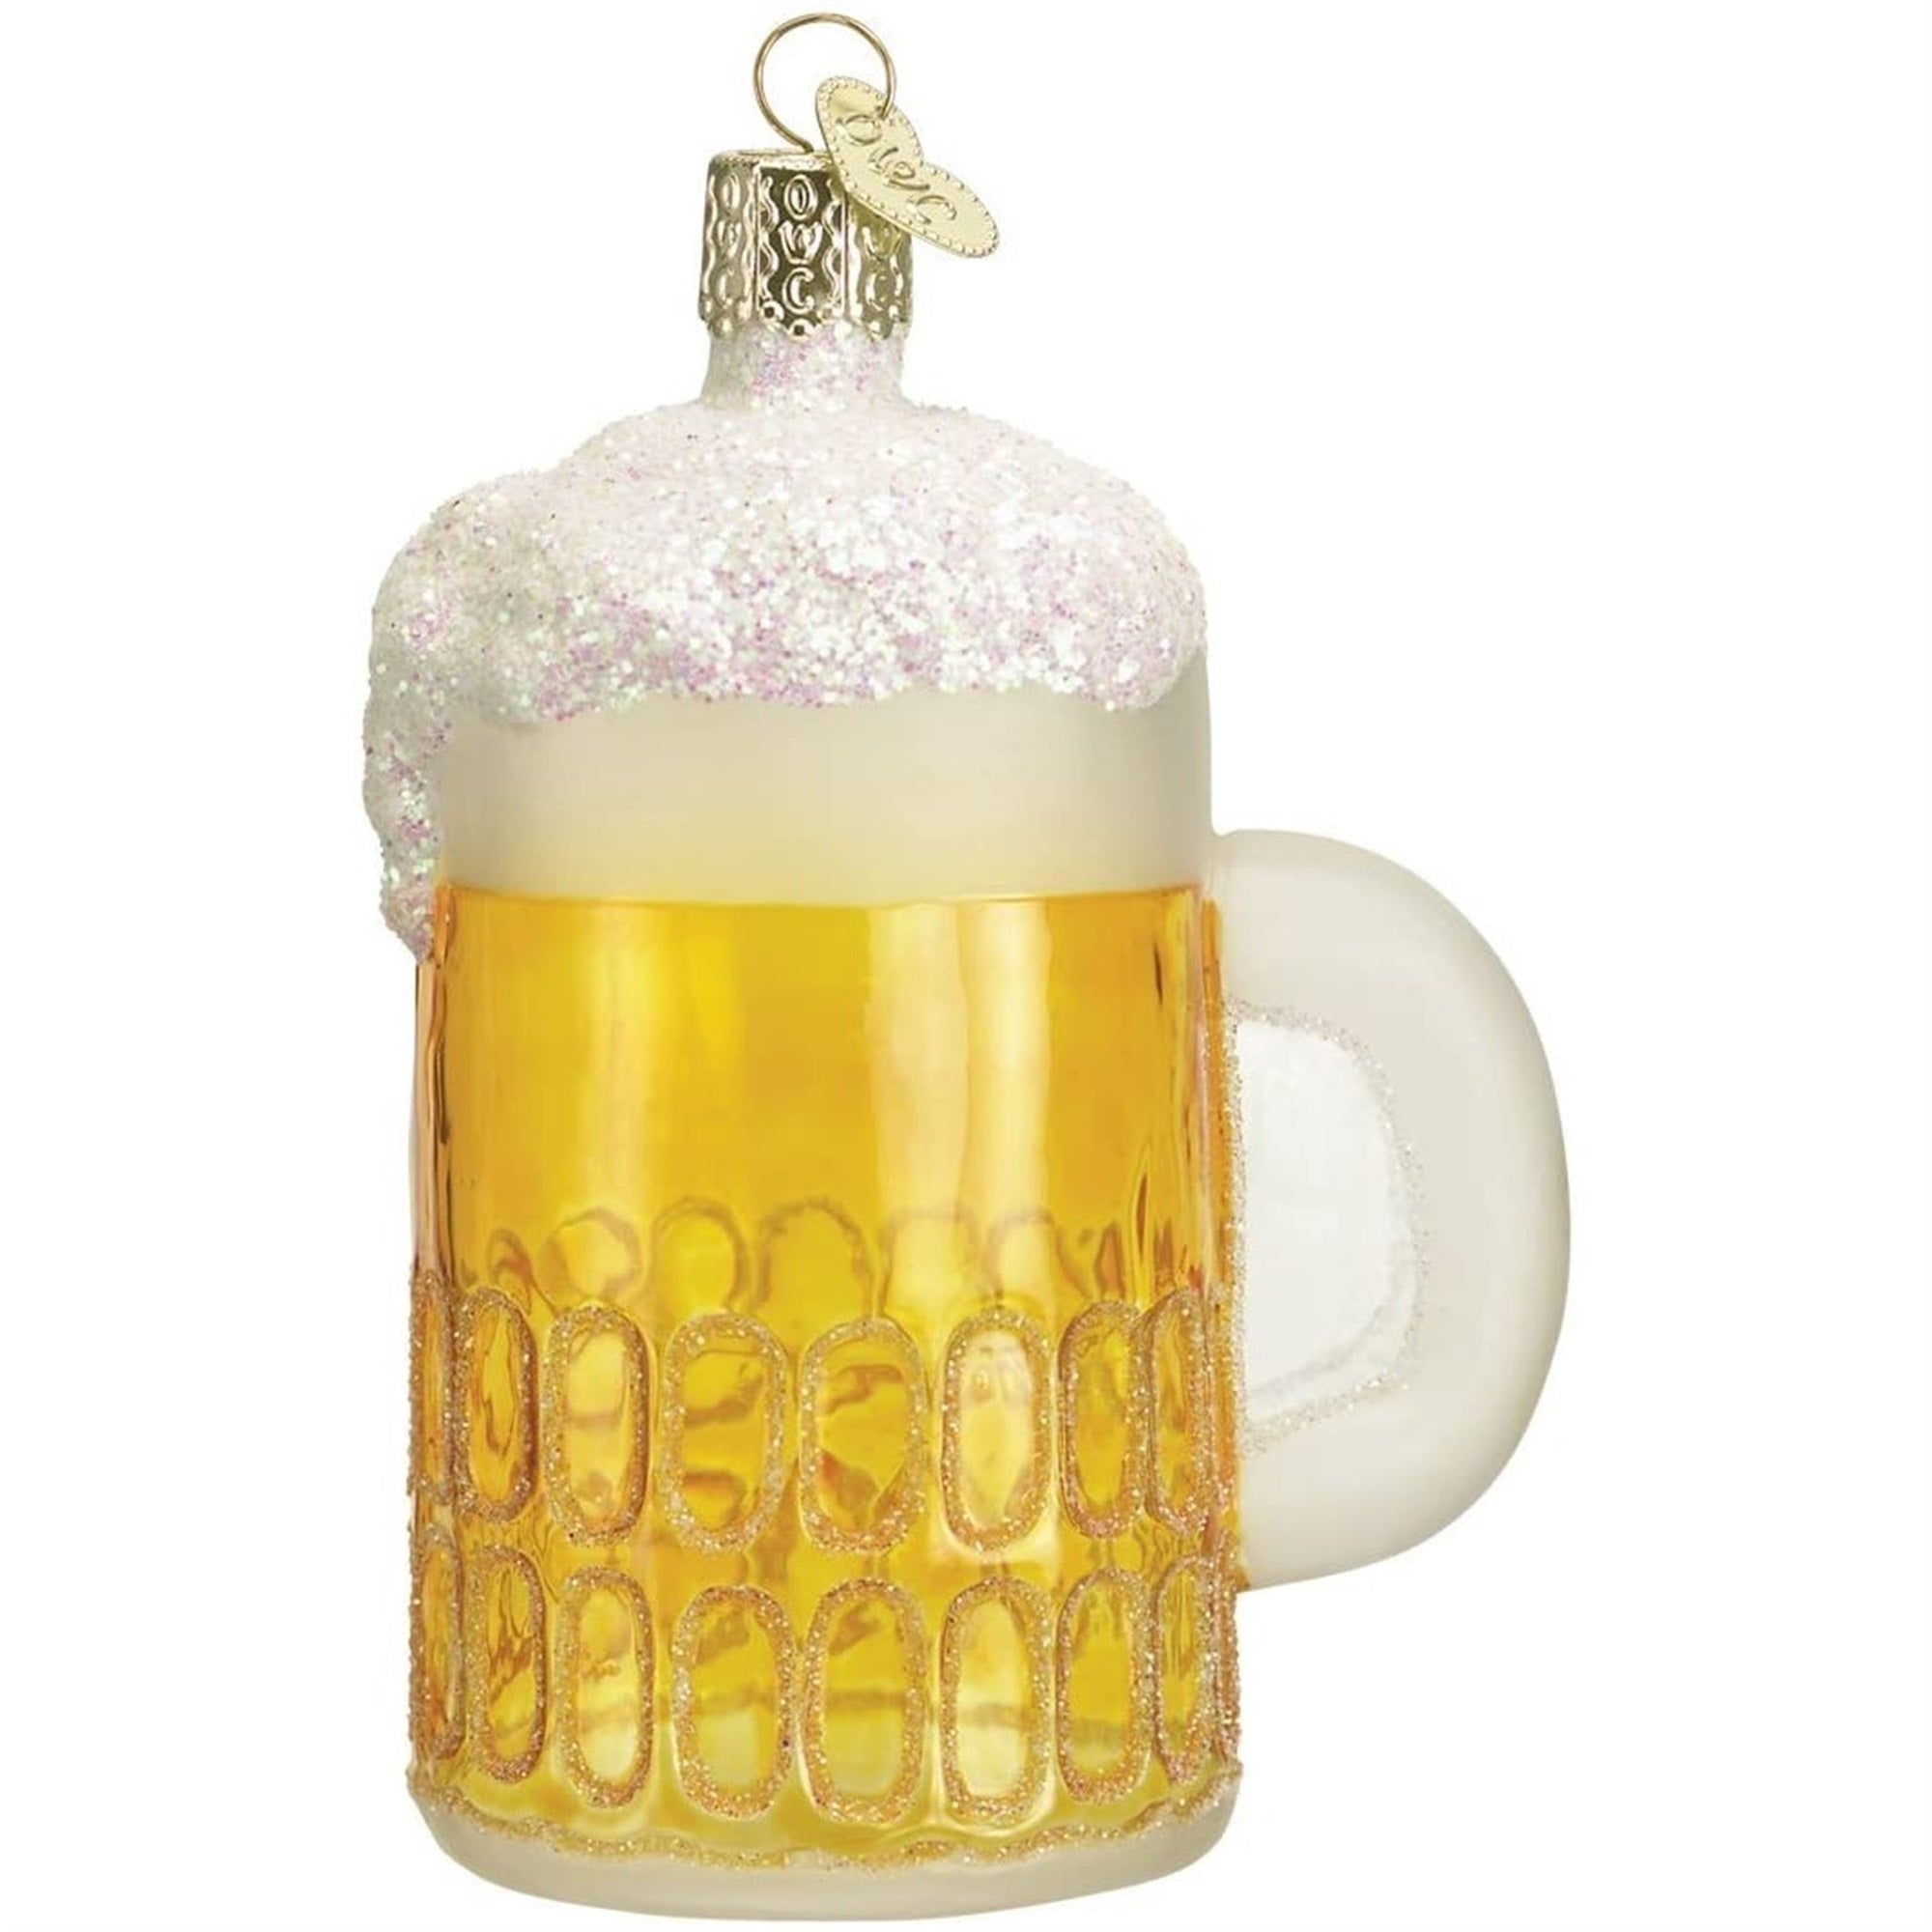 Old World Christmas Glass Blown Mug of Beer Ornament